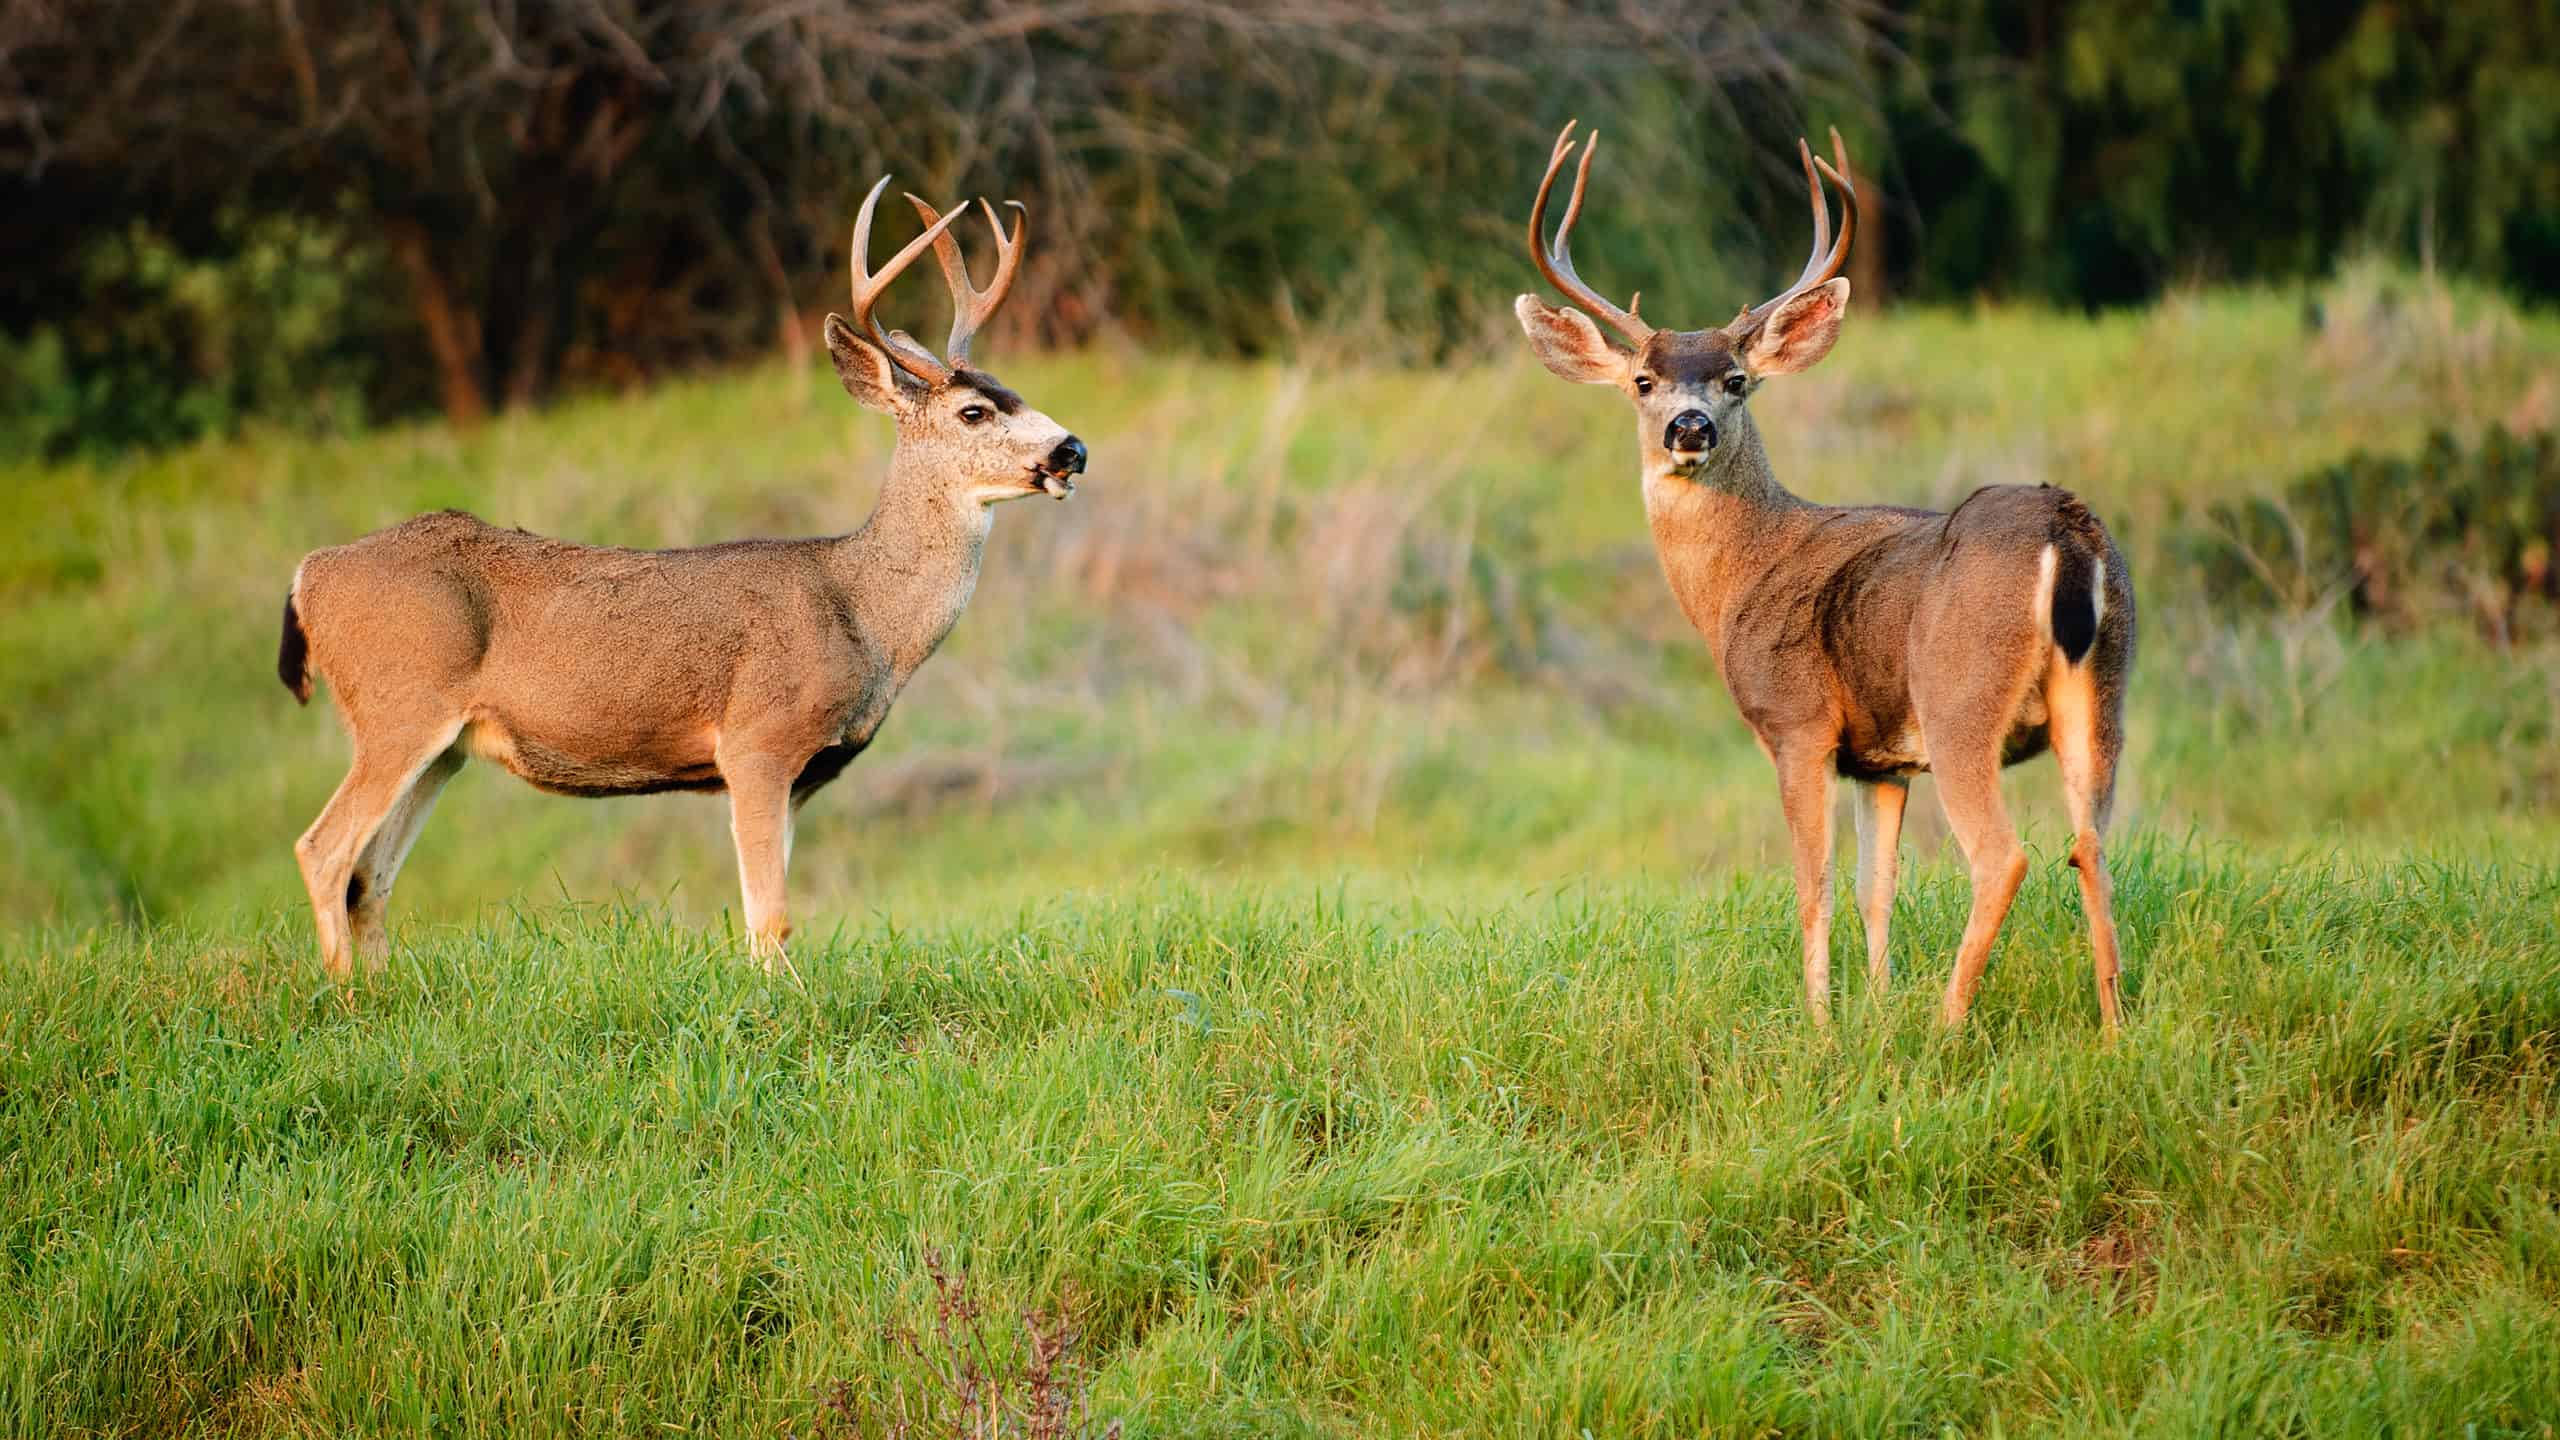 Blacktail deer bucks